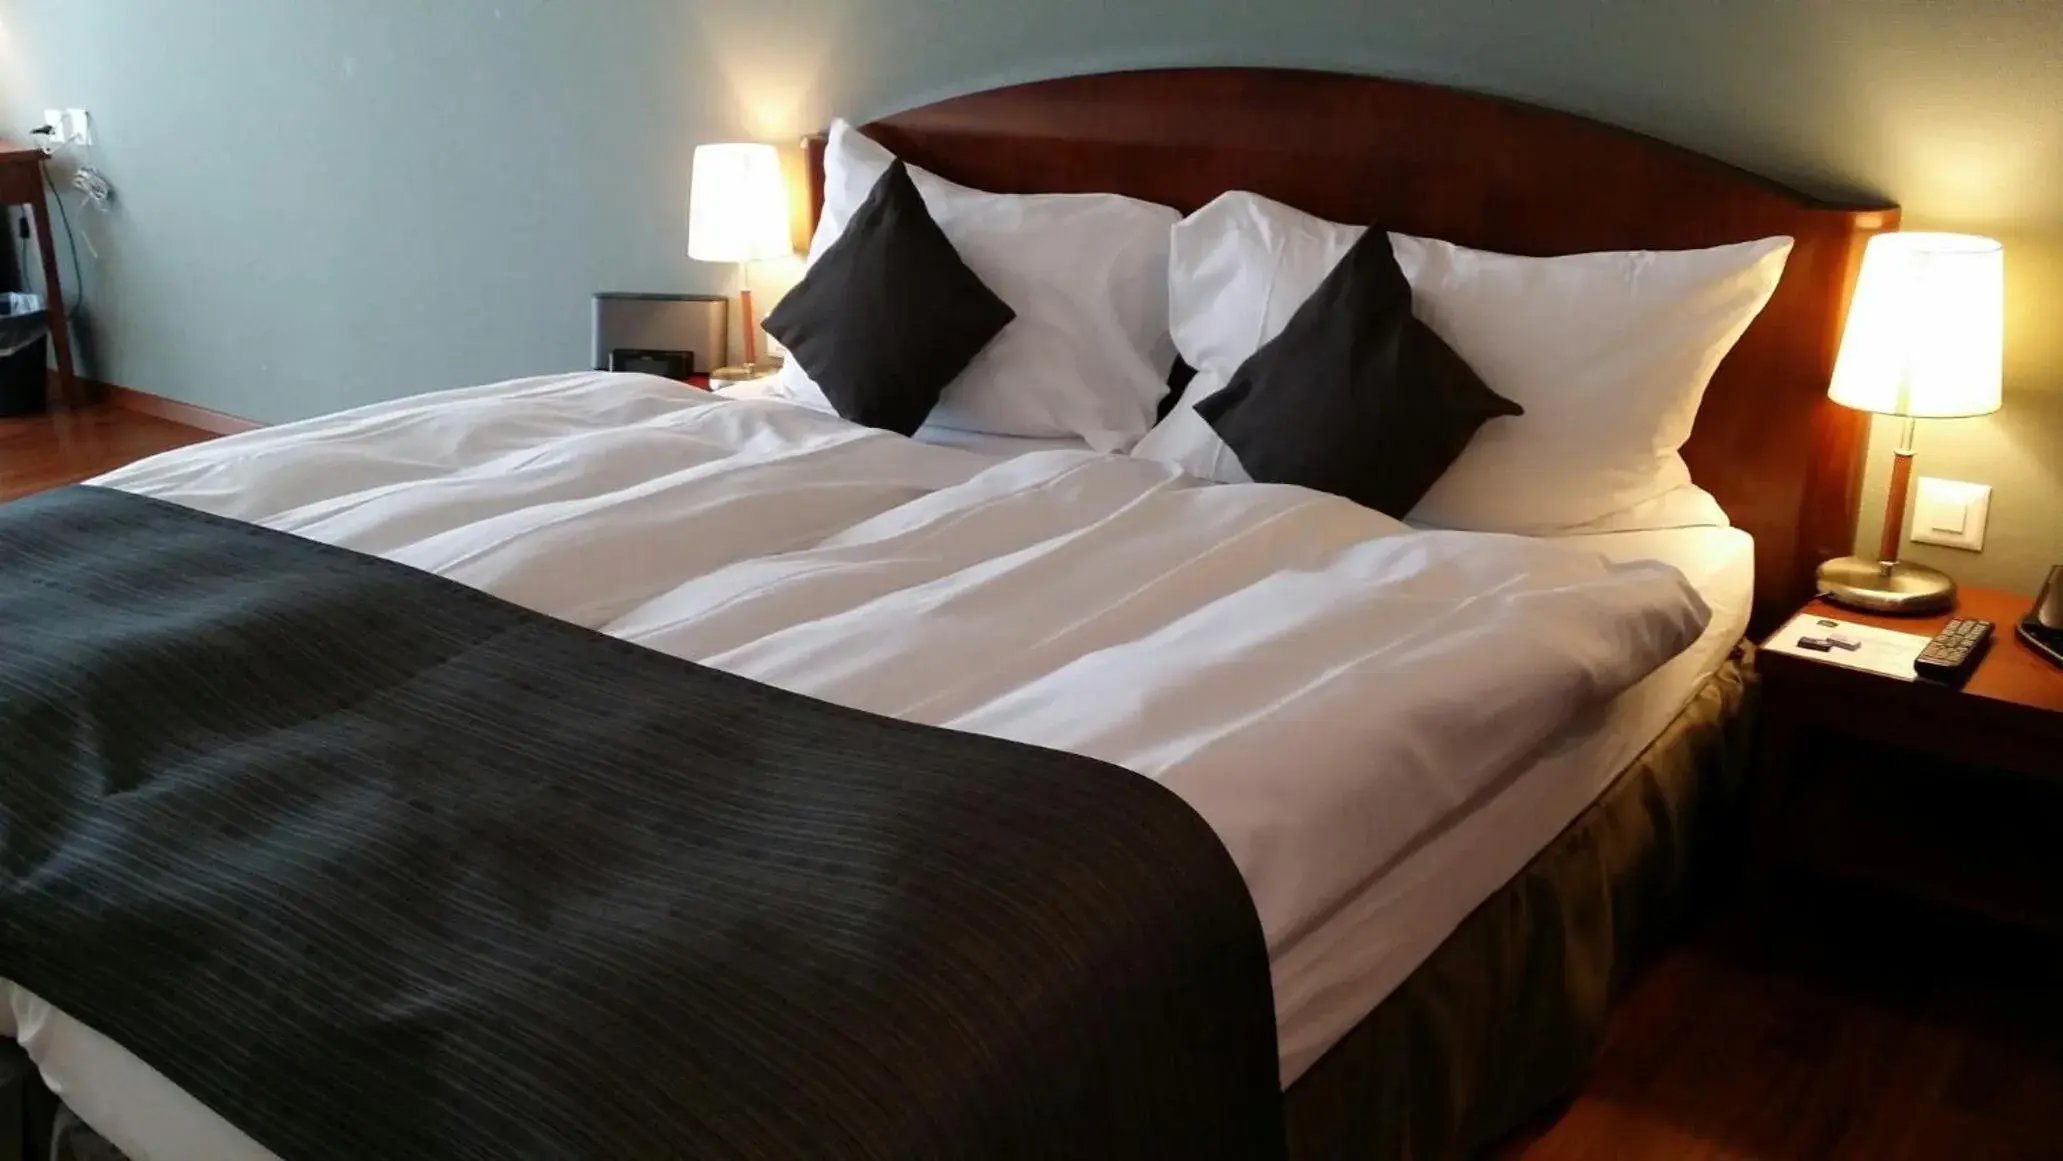 Bed in Best Western Hotel Rallye